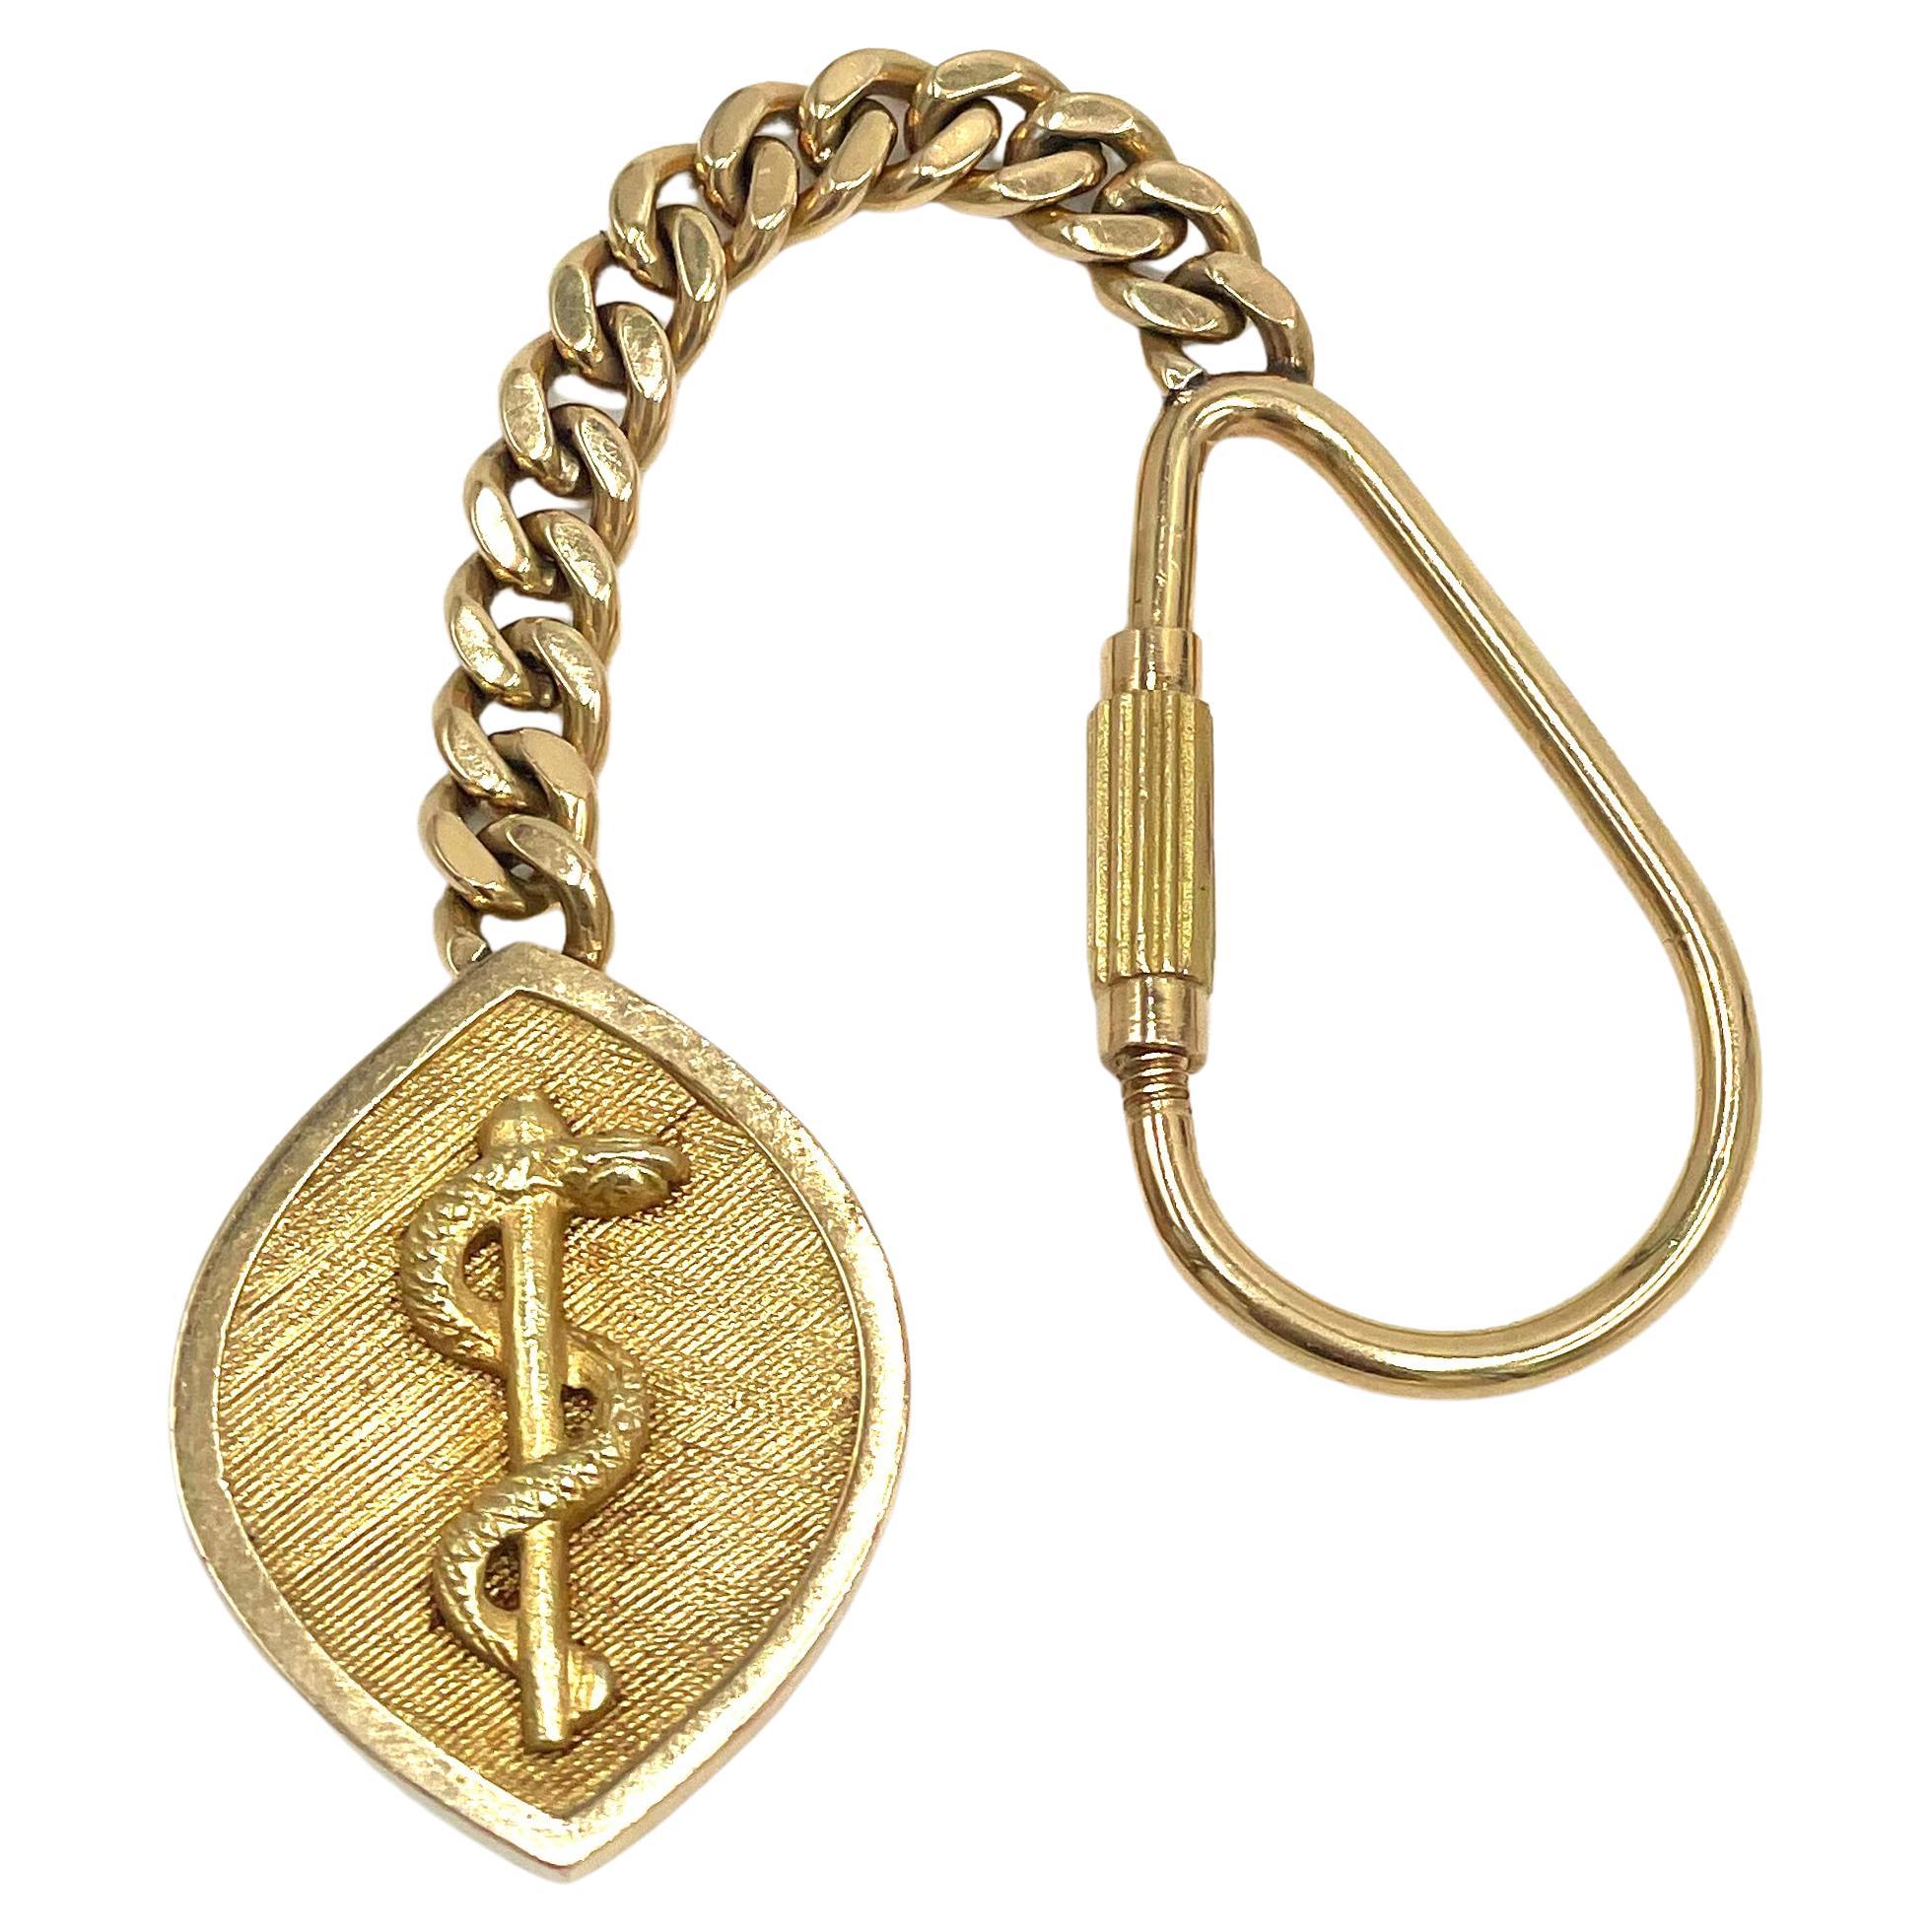 Schlüsselanhänger aus 14 Karat Gelbgold mit Asclepius-Stein.